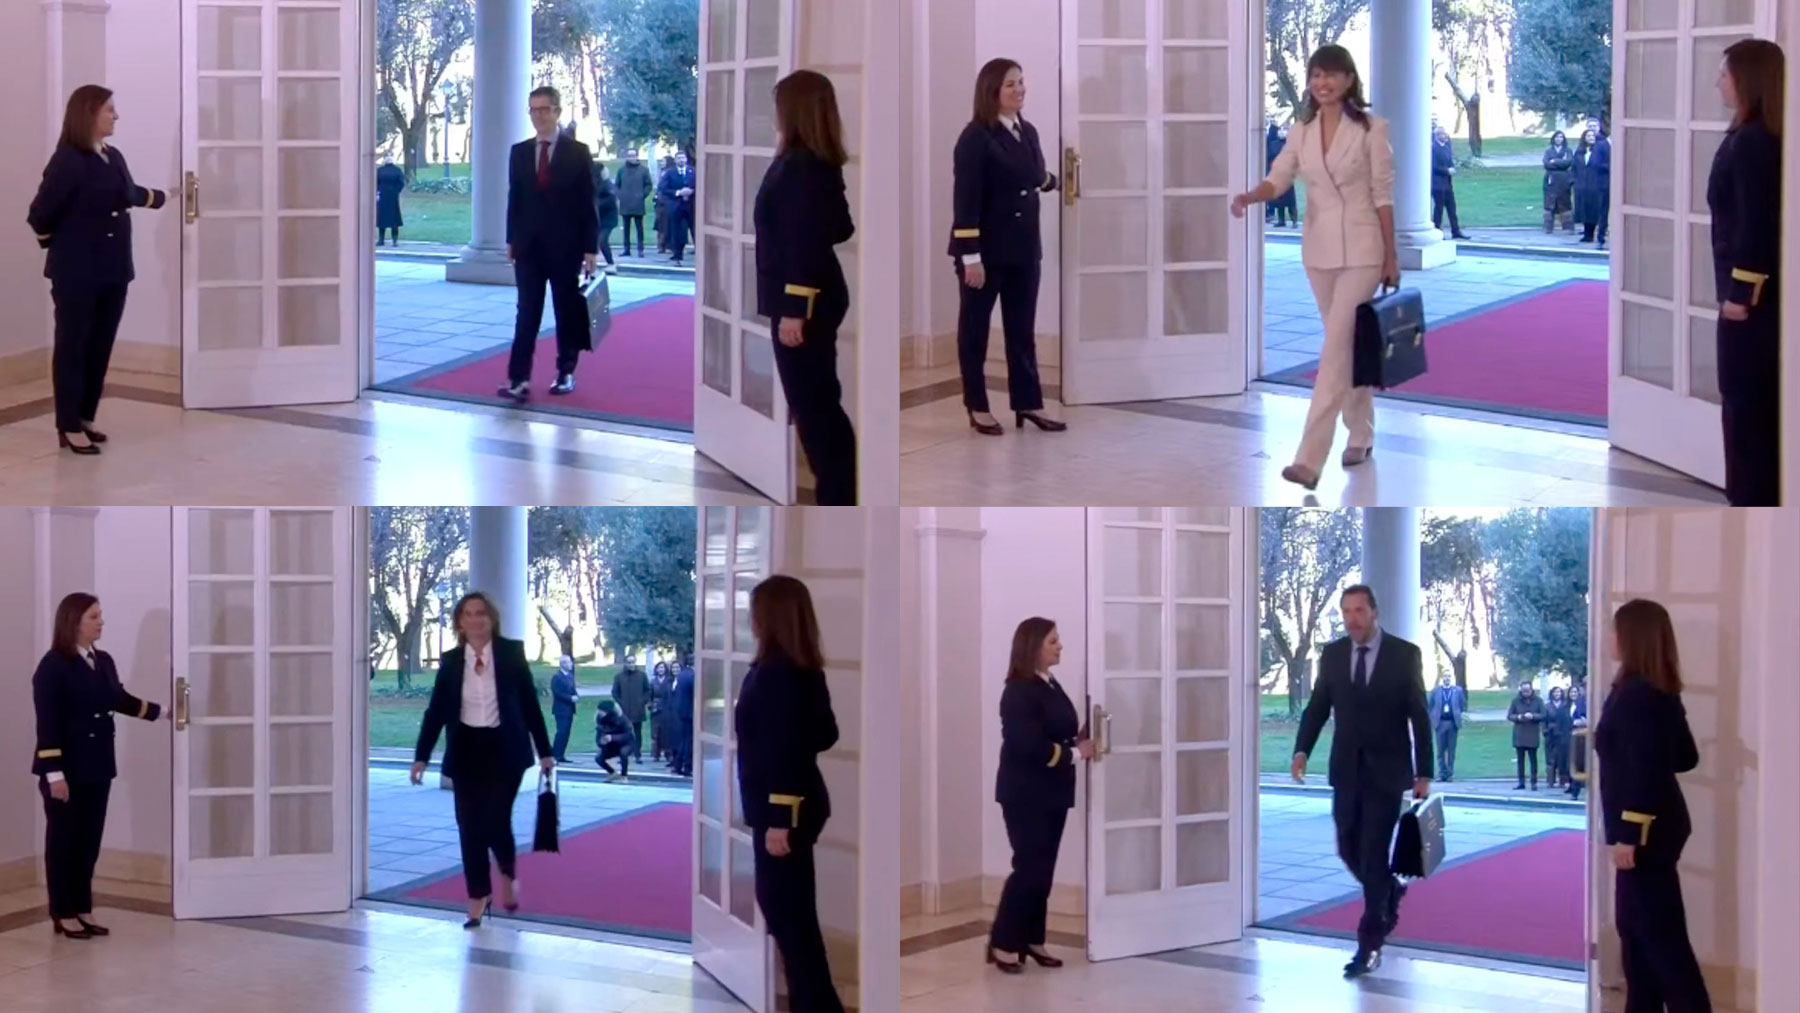 Las dos ujieres de Moncloa abriendo las puertas a los ministros.